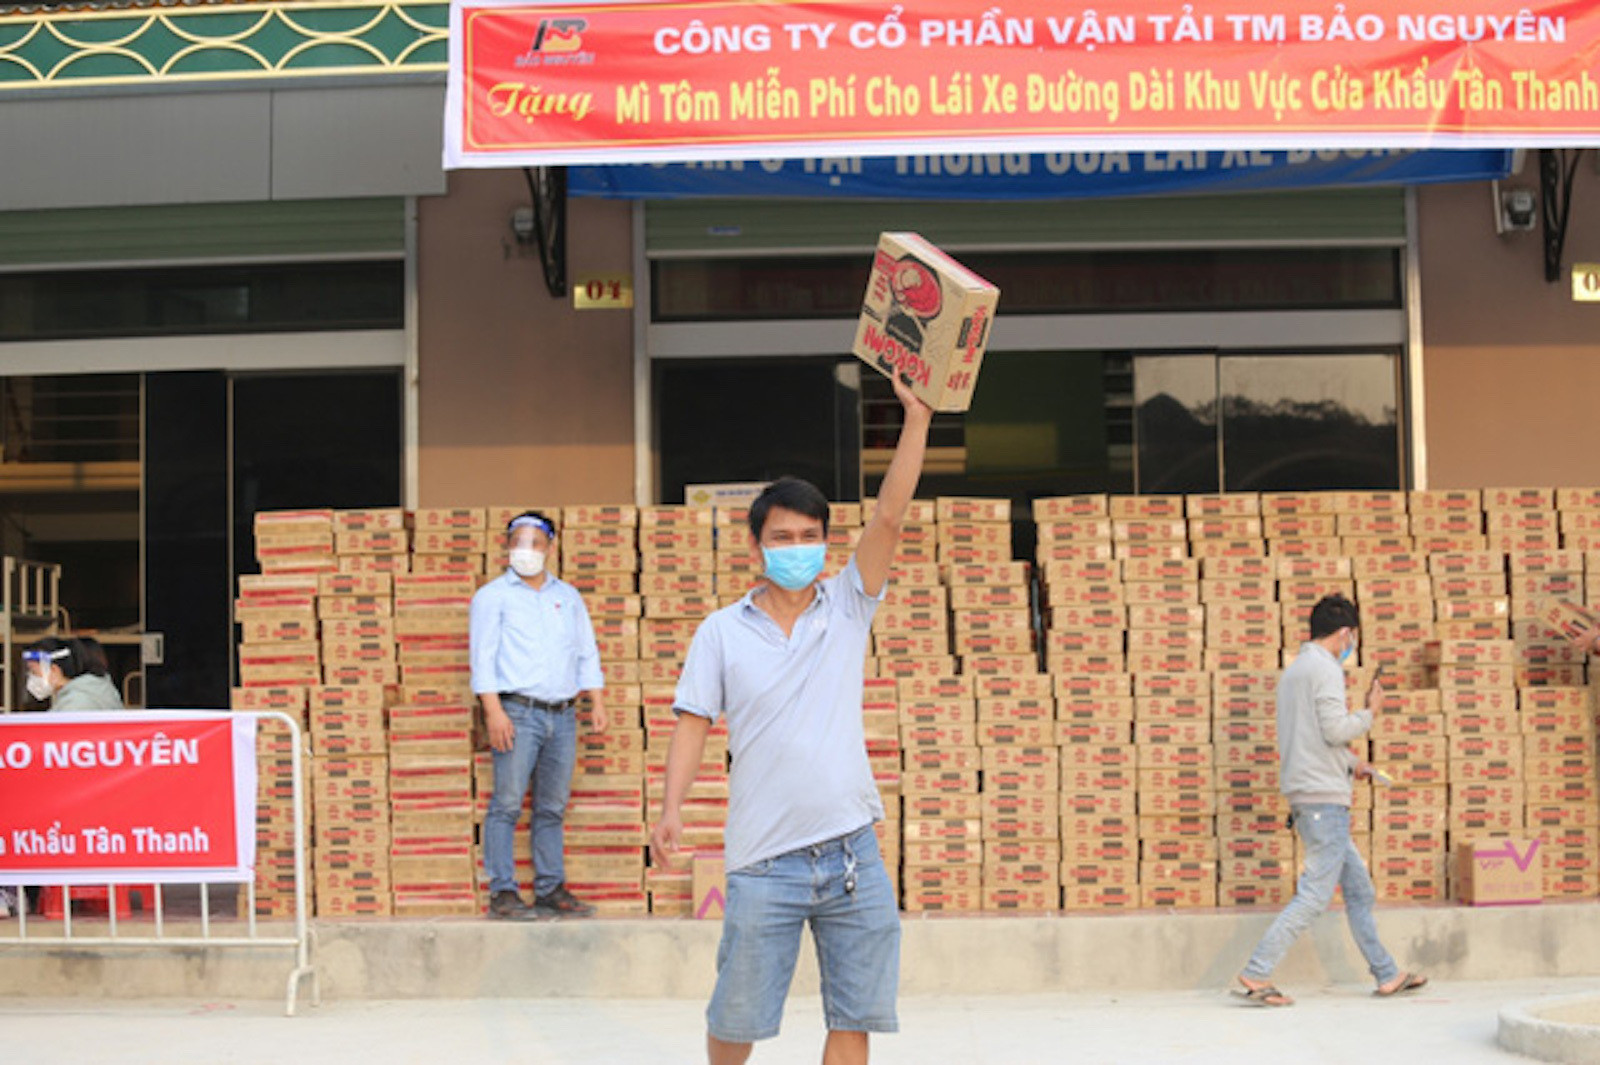 4.200 xe chở hàng vẫn ùn tắc: Tỉnh Lạng Sơn hỗ trợ doanh nghiệp - 3